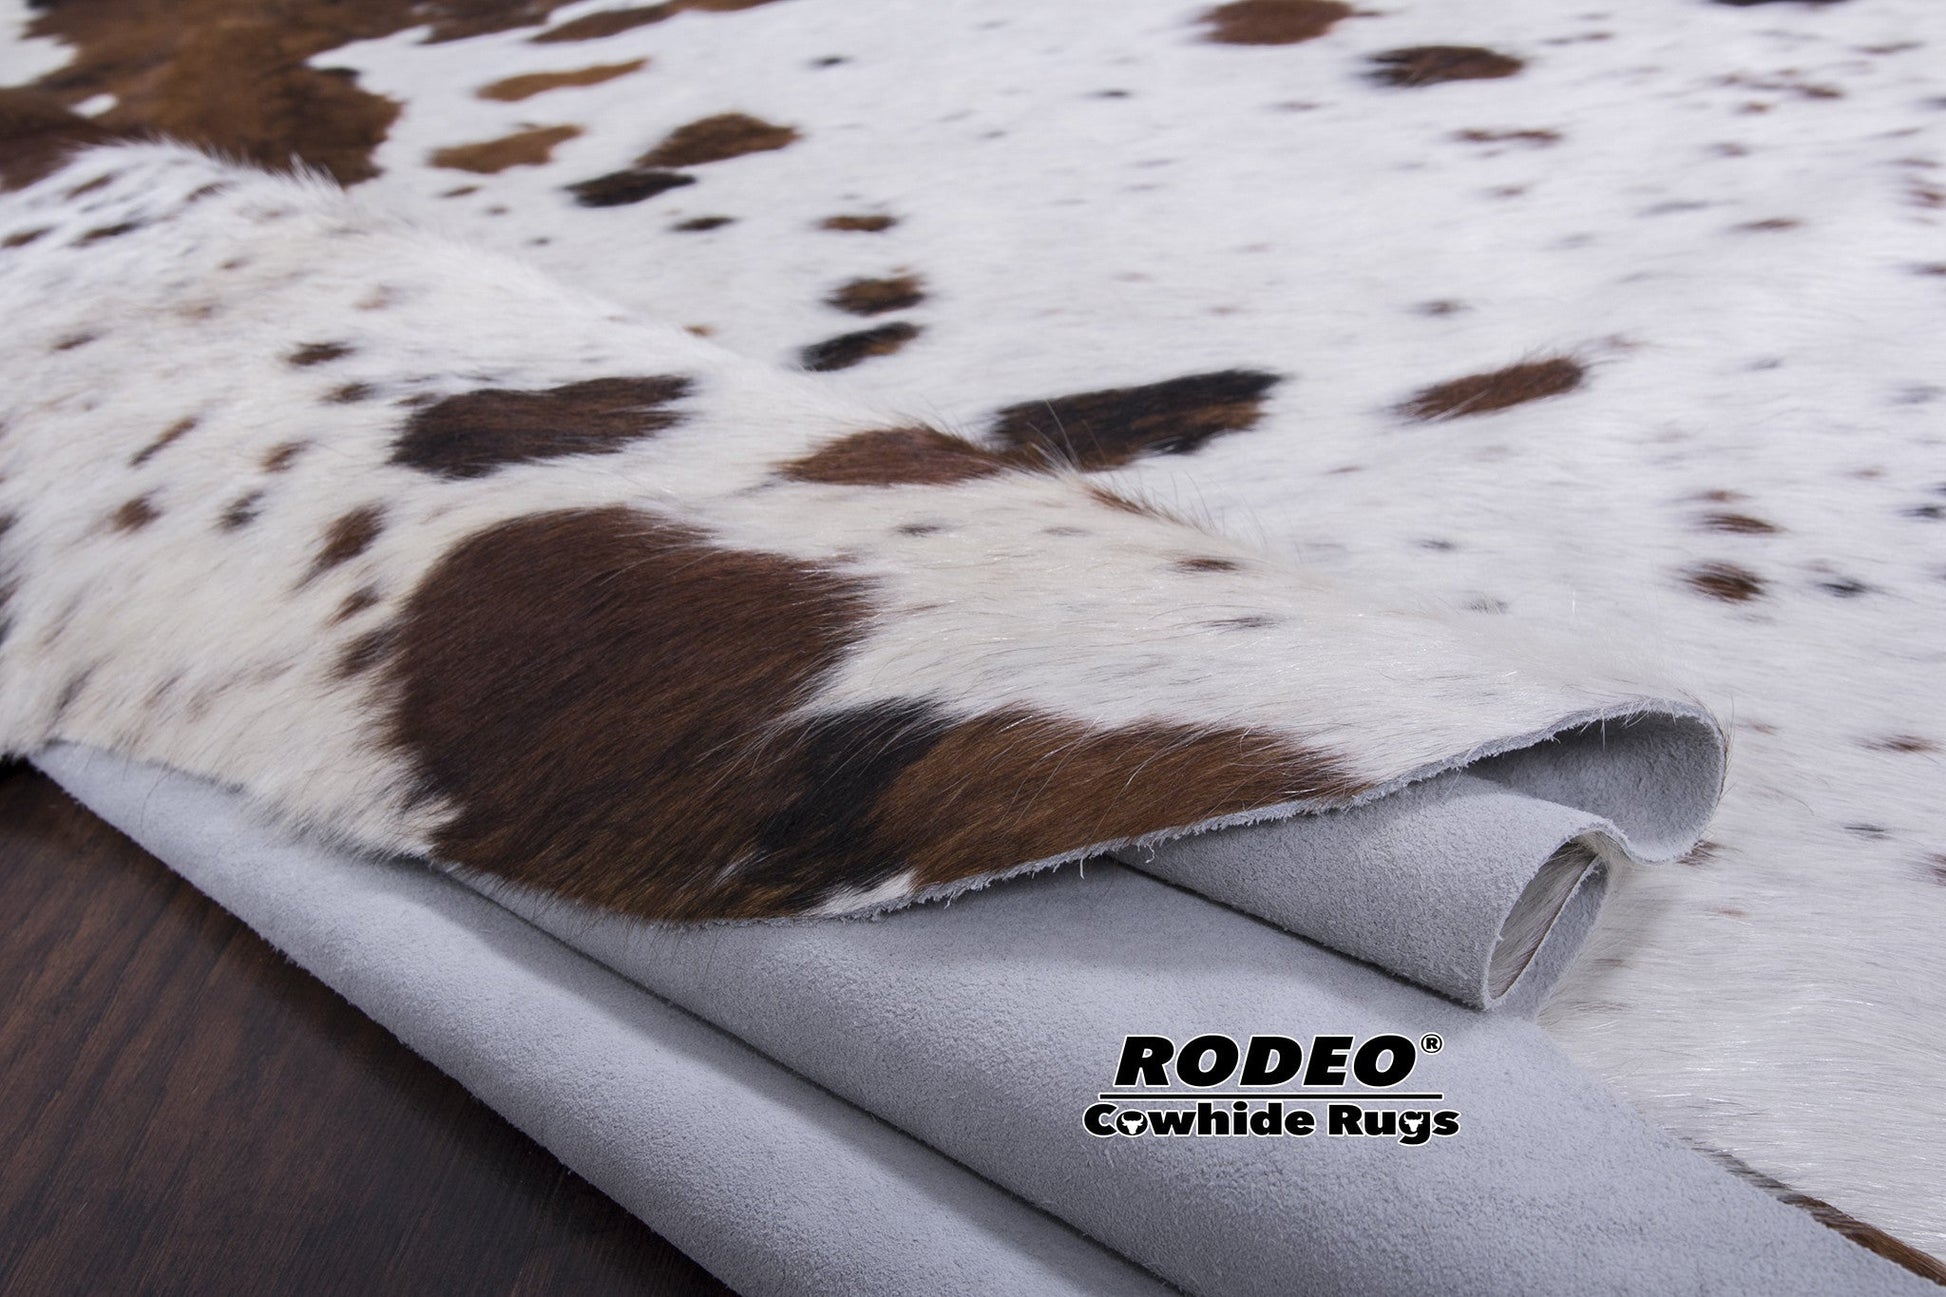 Normande Cowhide Rug - Rodeo Cowhide Rugs5x6